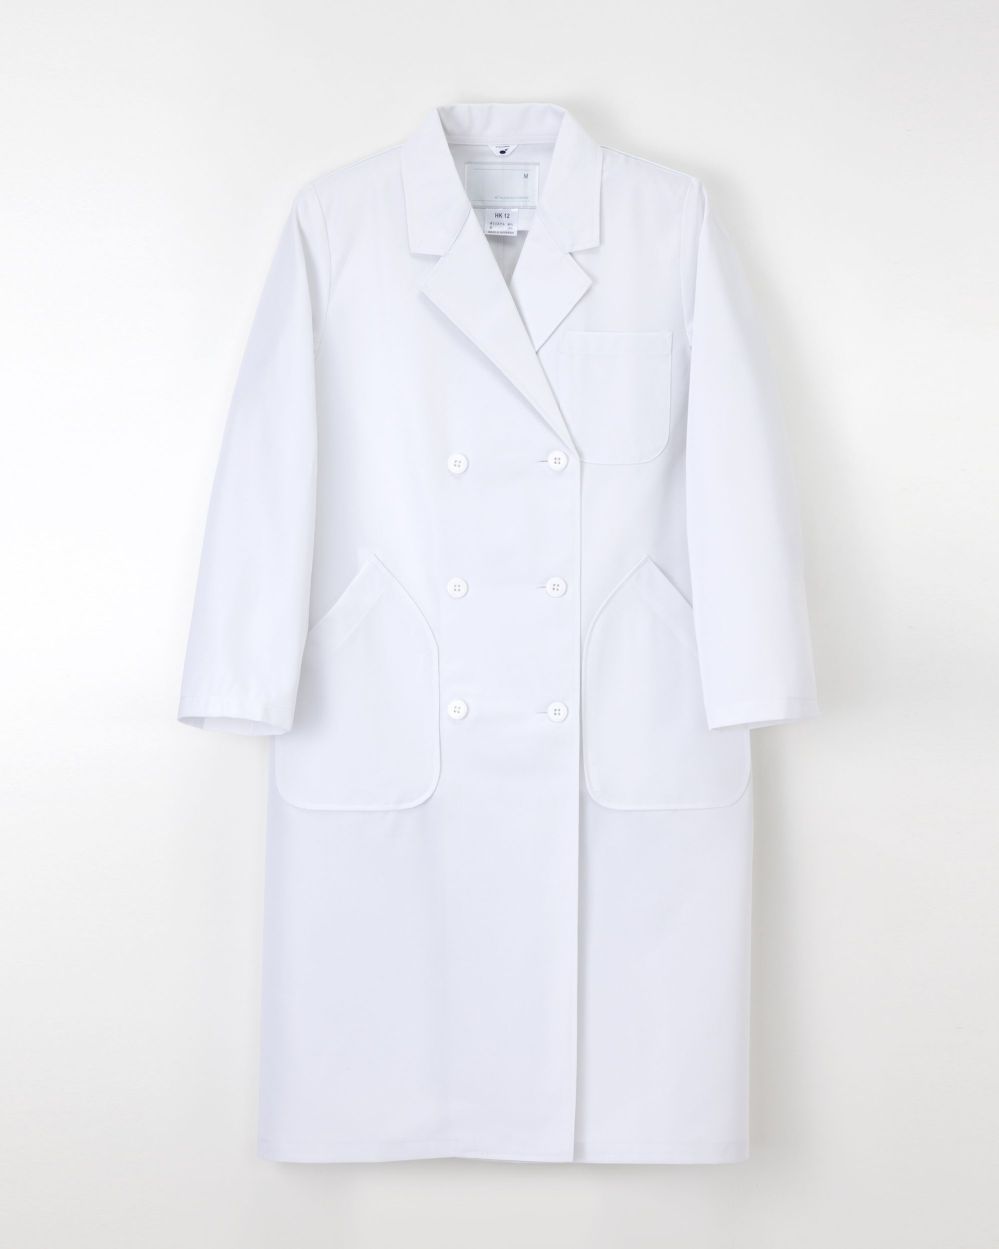 100%正規品100%正規品ナガイレーベン 女子シングル診察衣 ホワイト L 1枚 HK13 介護用衣料